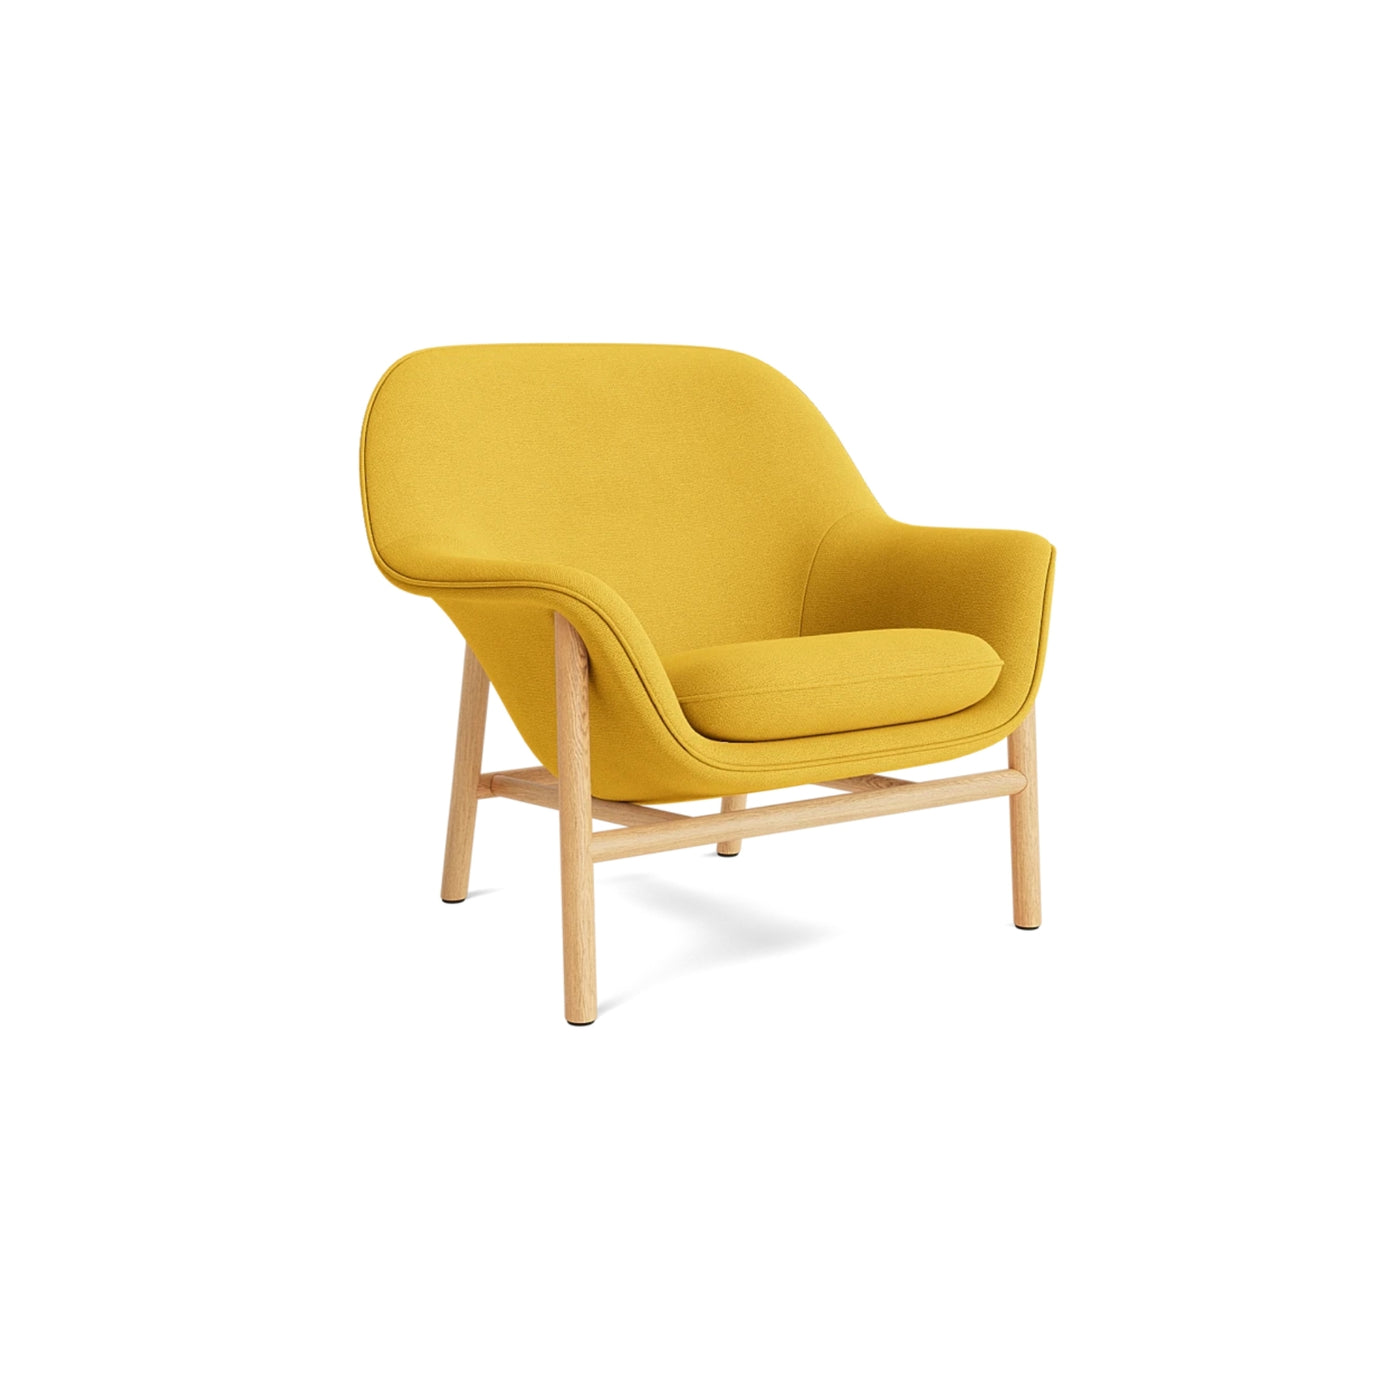 Normann Copenhagen Drape Lounge Chair at someday designs. #colour_hallingdal-457